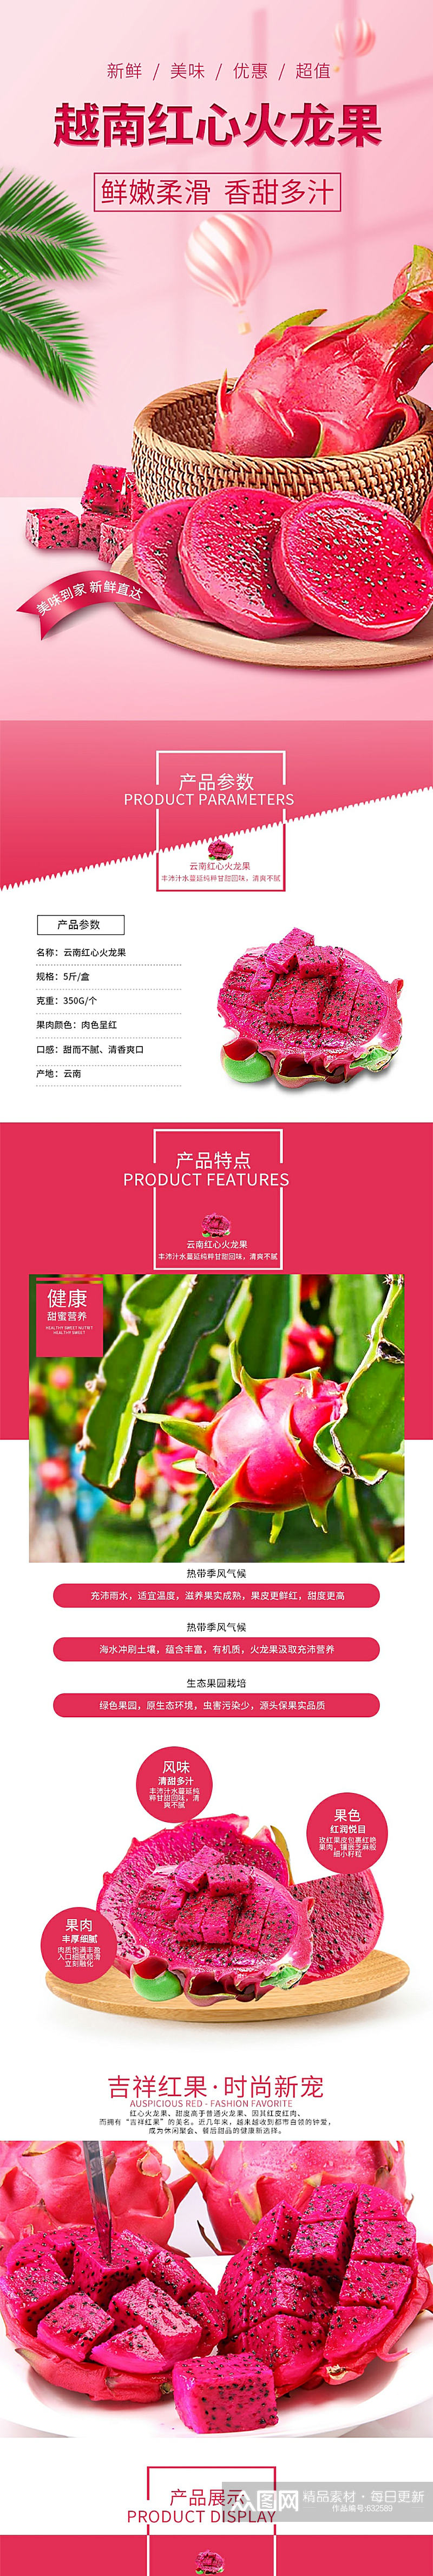 越南红心火龙果水果淘宝首页详情页套装素材